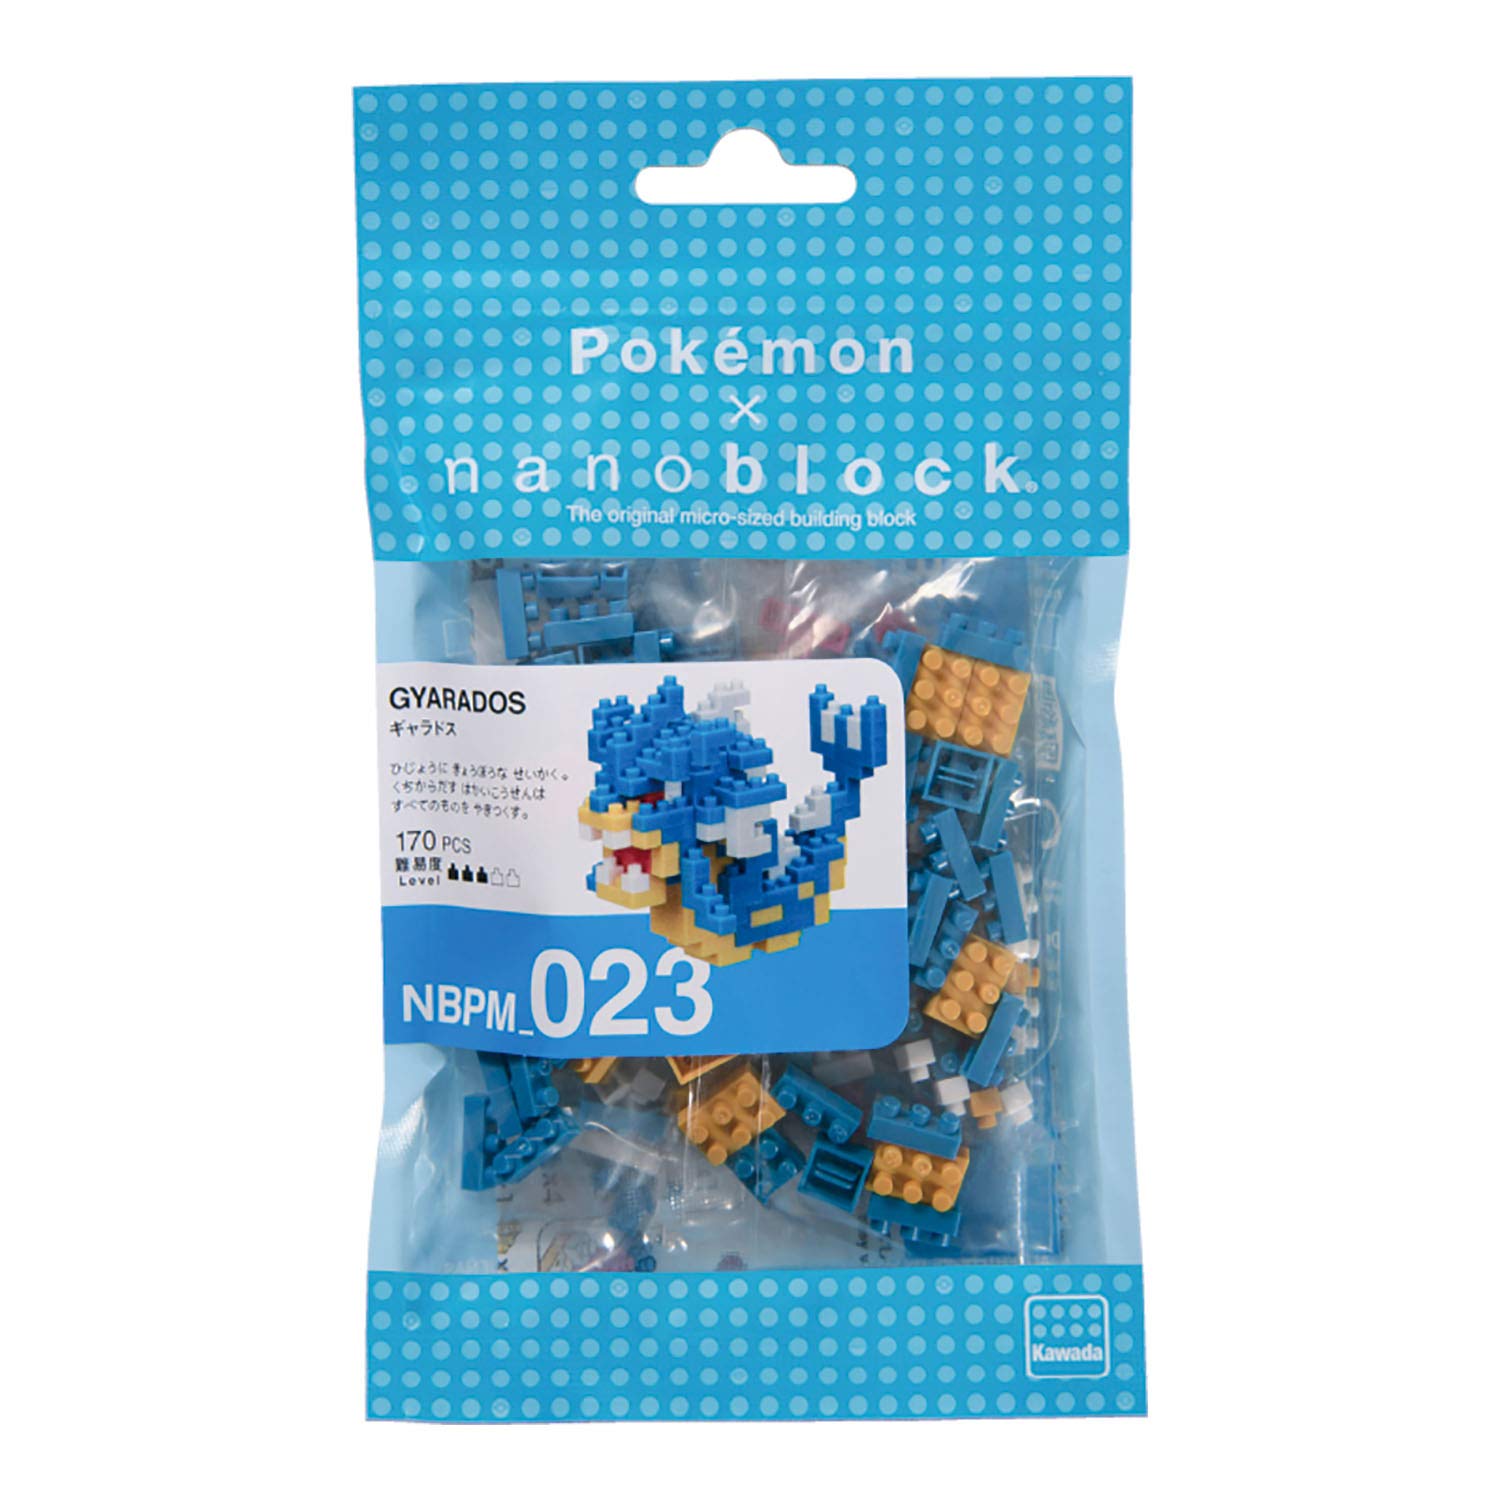 nanoblock Pokemon Gyarados Building Kit